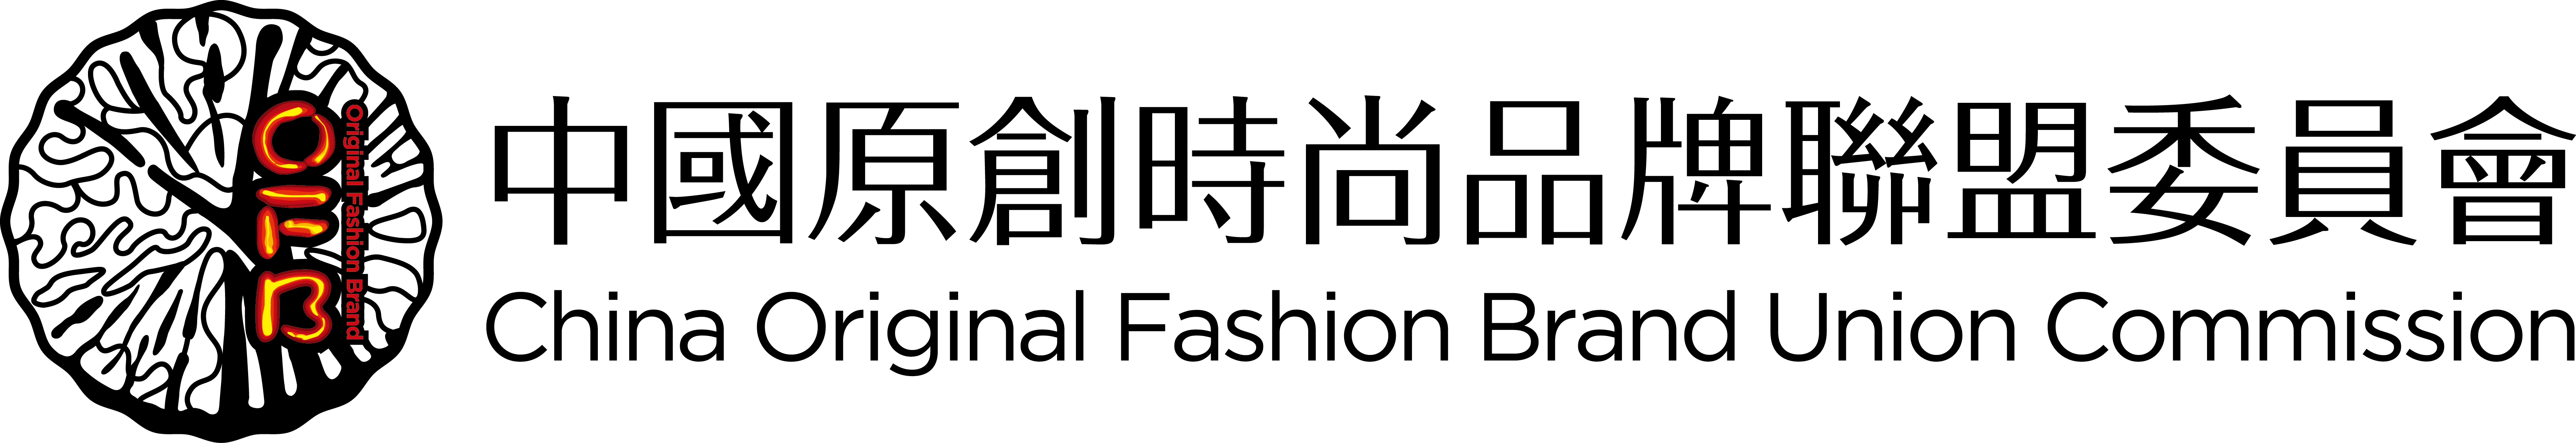 中國原創時尚品牌聯盟委員會